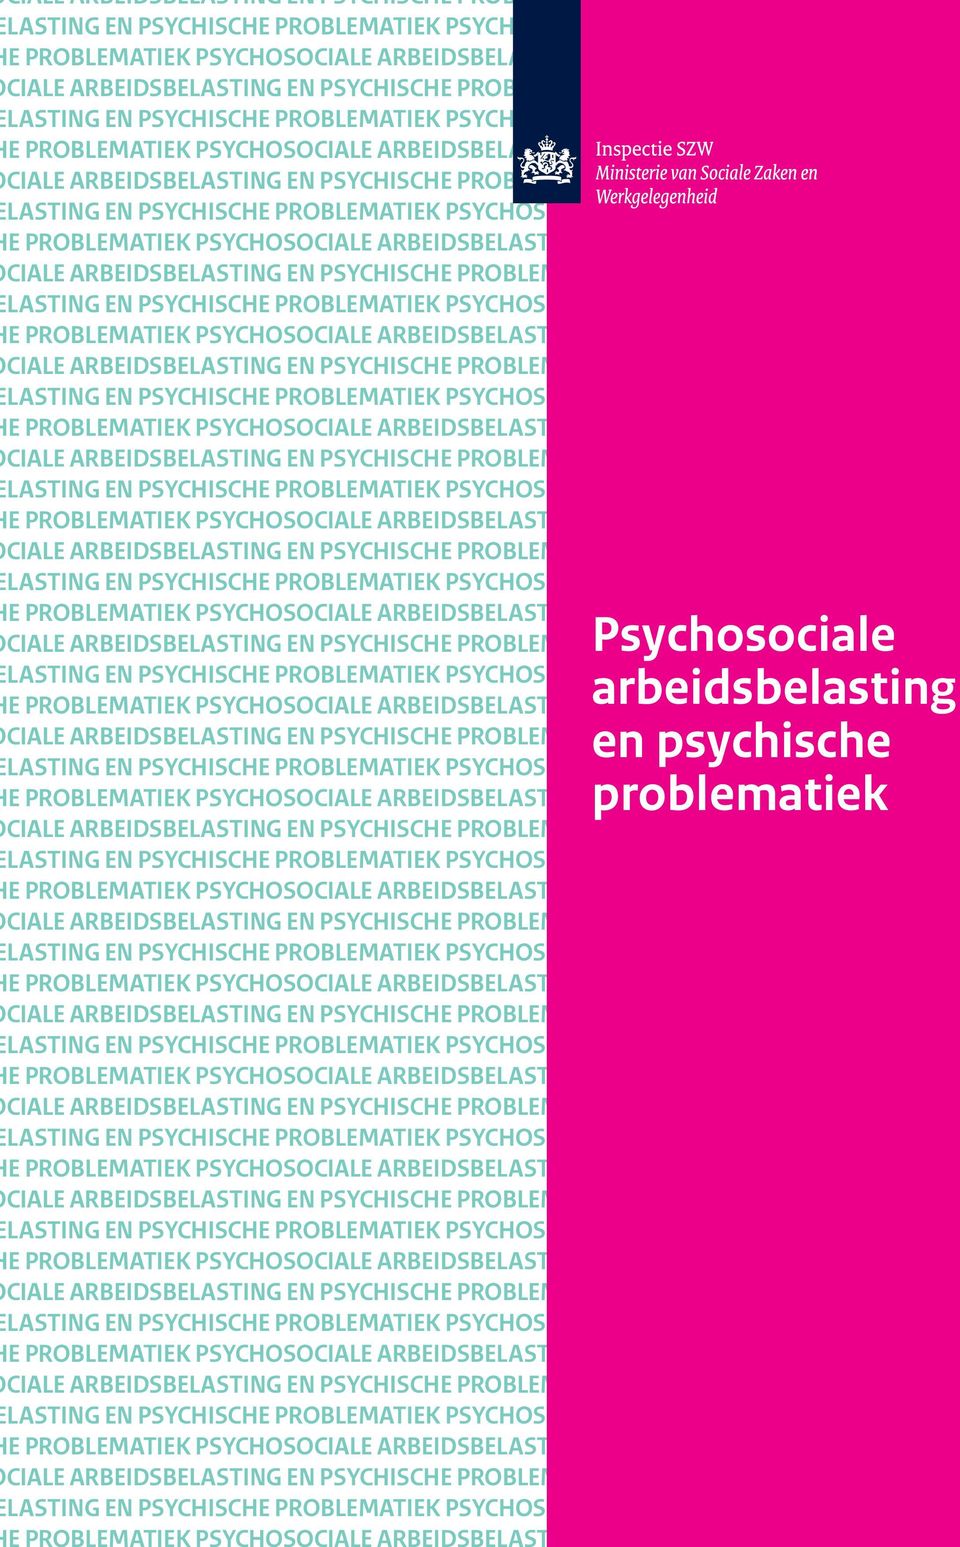 PROBLEMATIEK PSYCHOSOCIALE ARBEIDSBELASTING EN E PROBLEMATIEK PSYCHOSOCIALE ARBEIDSBELASTING EN PSYCHISCHE PROBLEMATIEK CIALE ARBEIDSBELASTING EN PSYCHISCHE PROBLEMATIEK en PSYCHOSOCIALE psychische